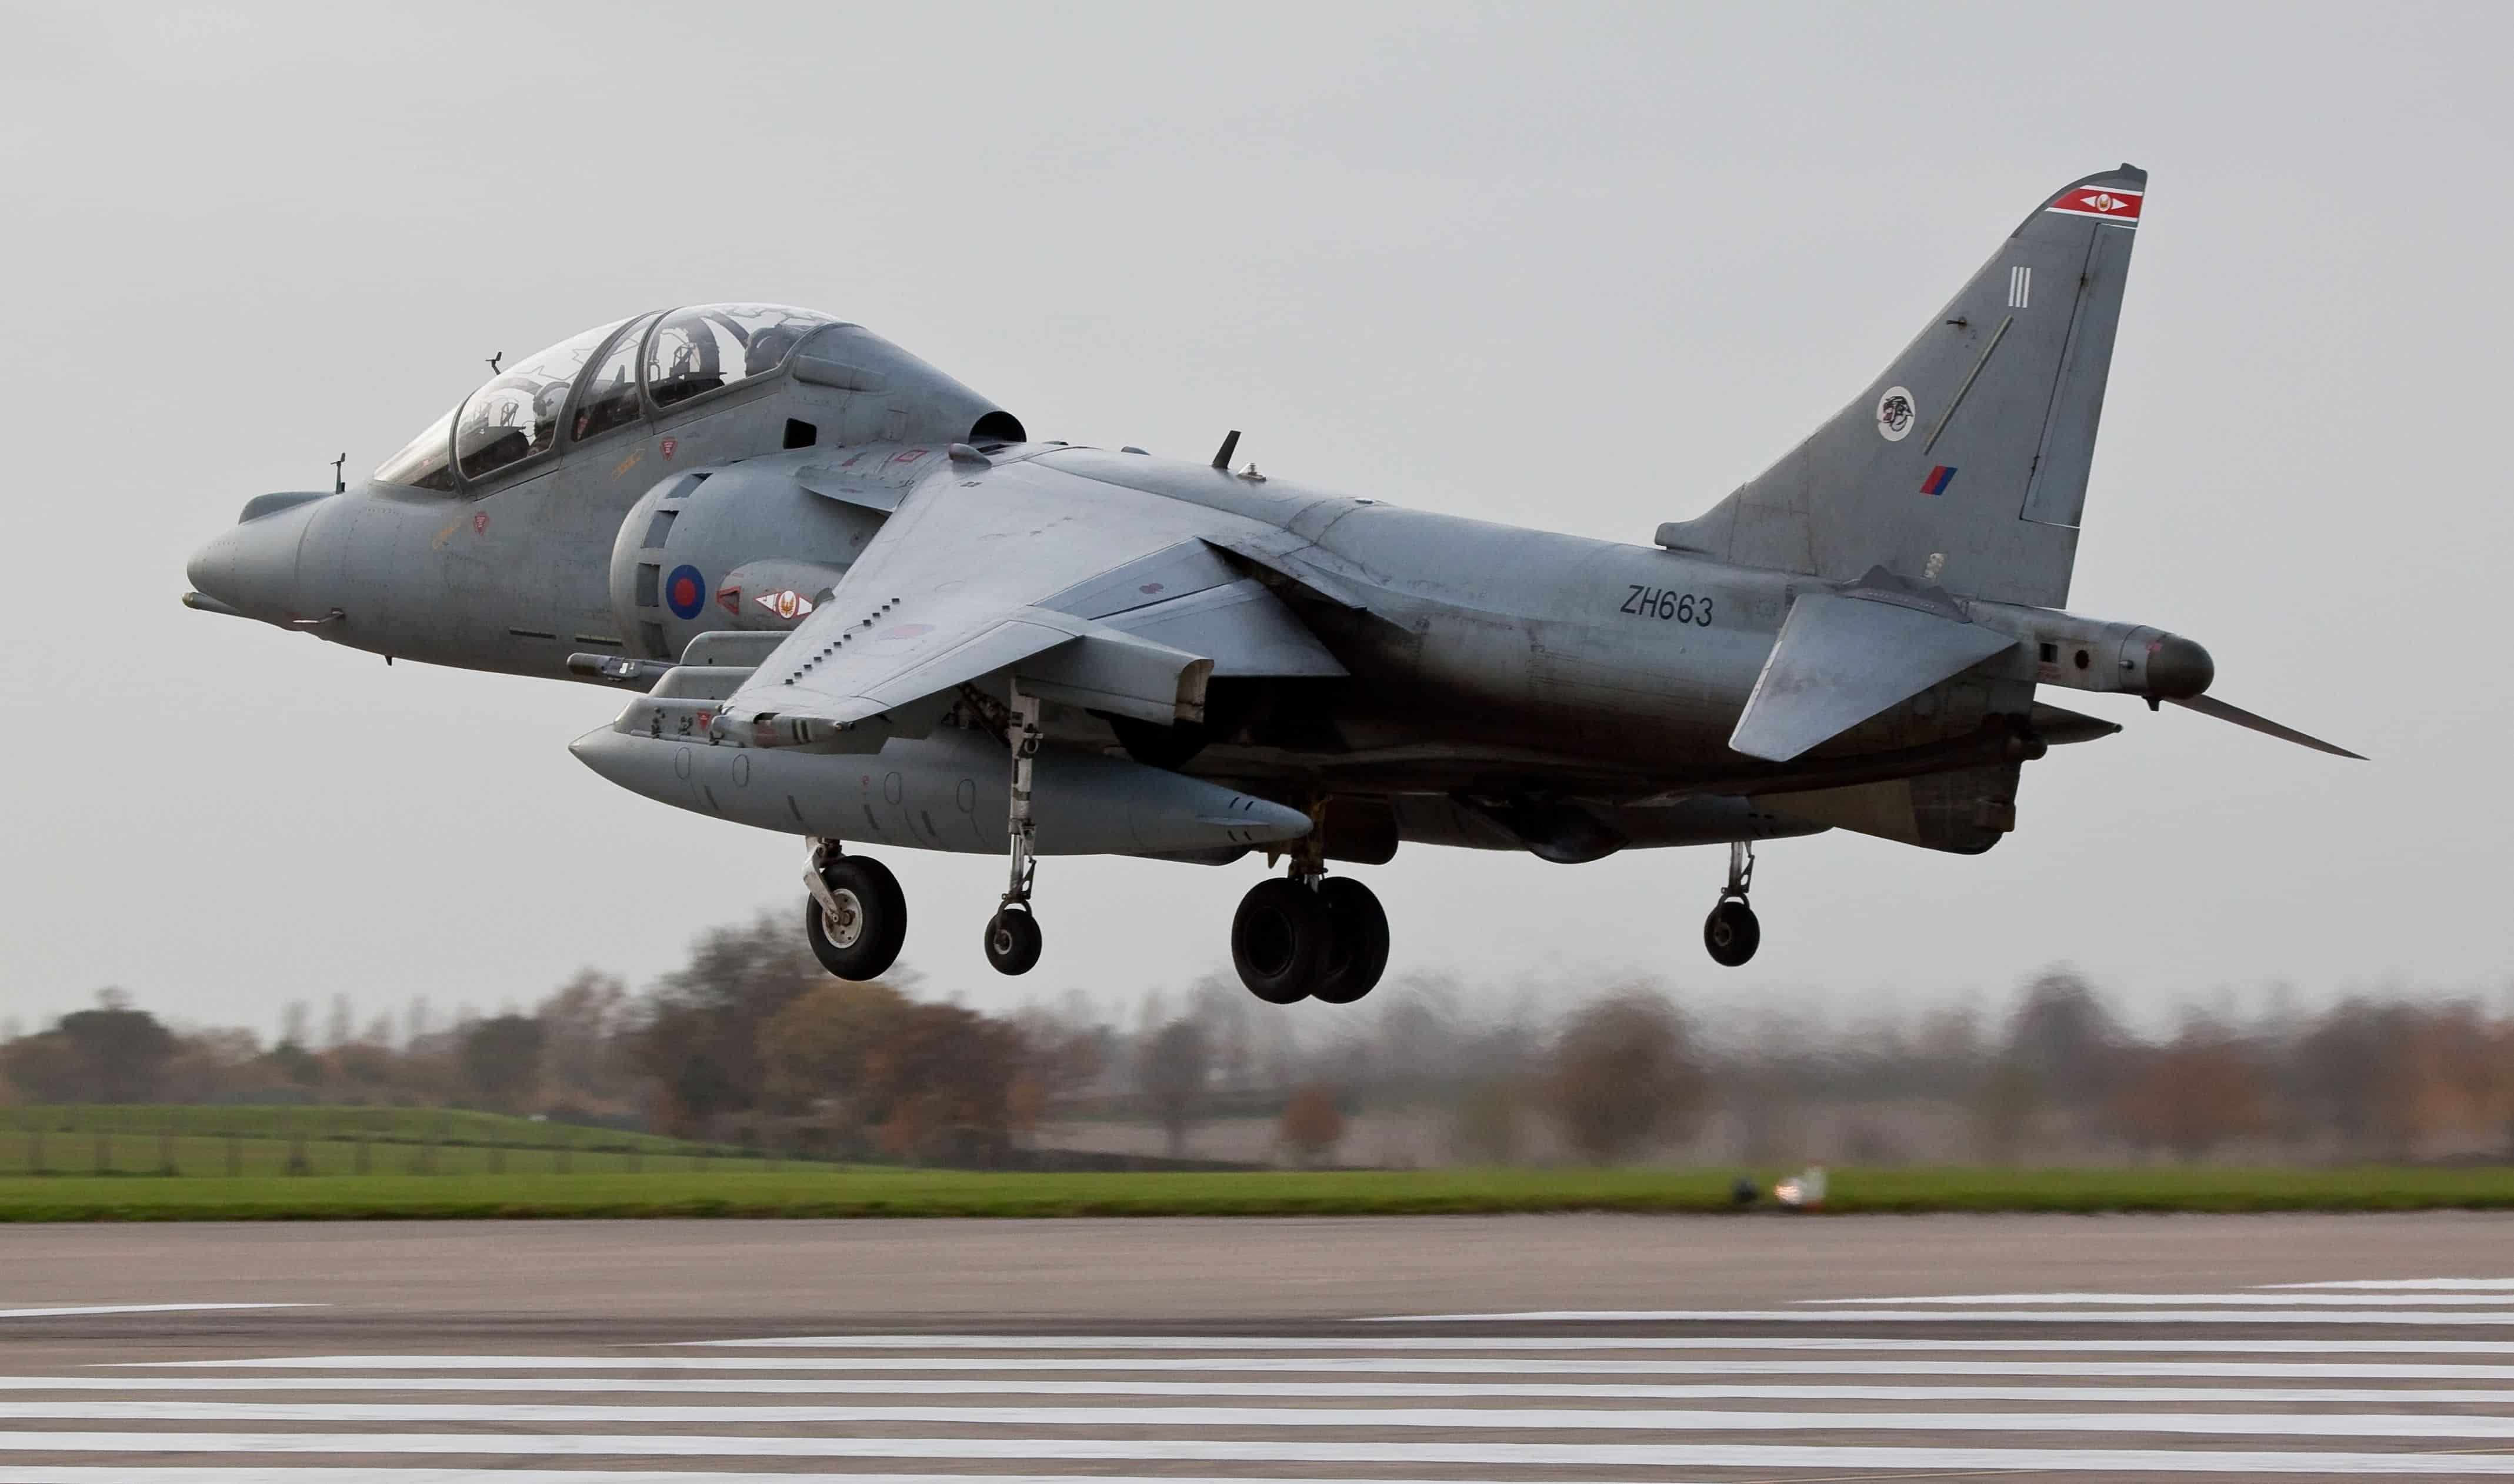 RAF COTTESMORE, RUTLAND, UK - NOVEMBER 2: BAe Systems Harrier T.12 ZH663 landing on November 2, 2010 at RAF Cottesmore, Rutland, UK.